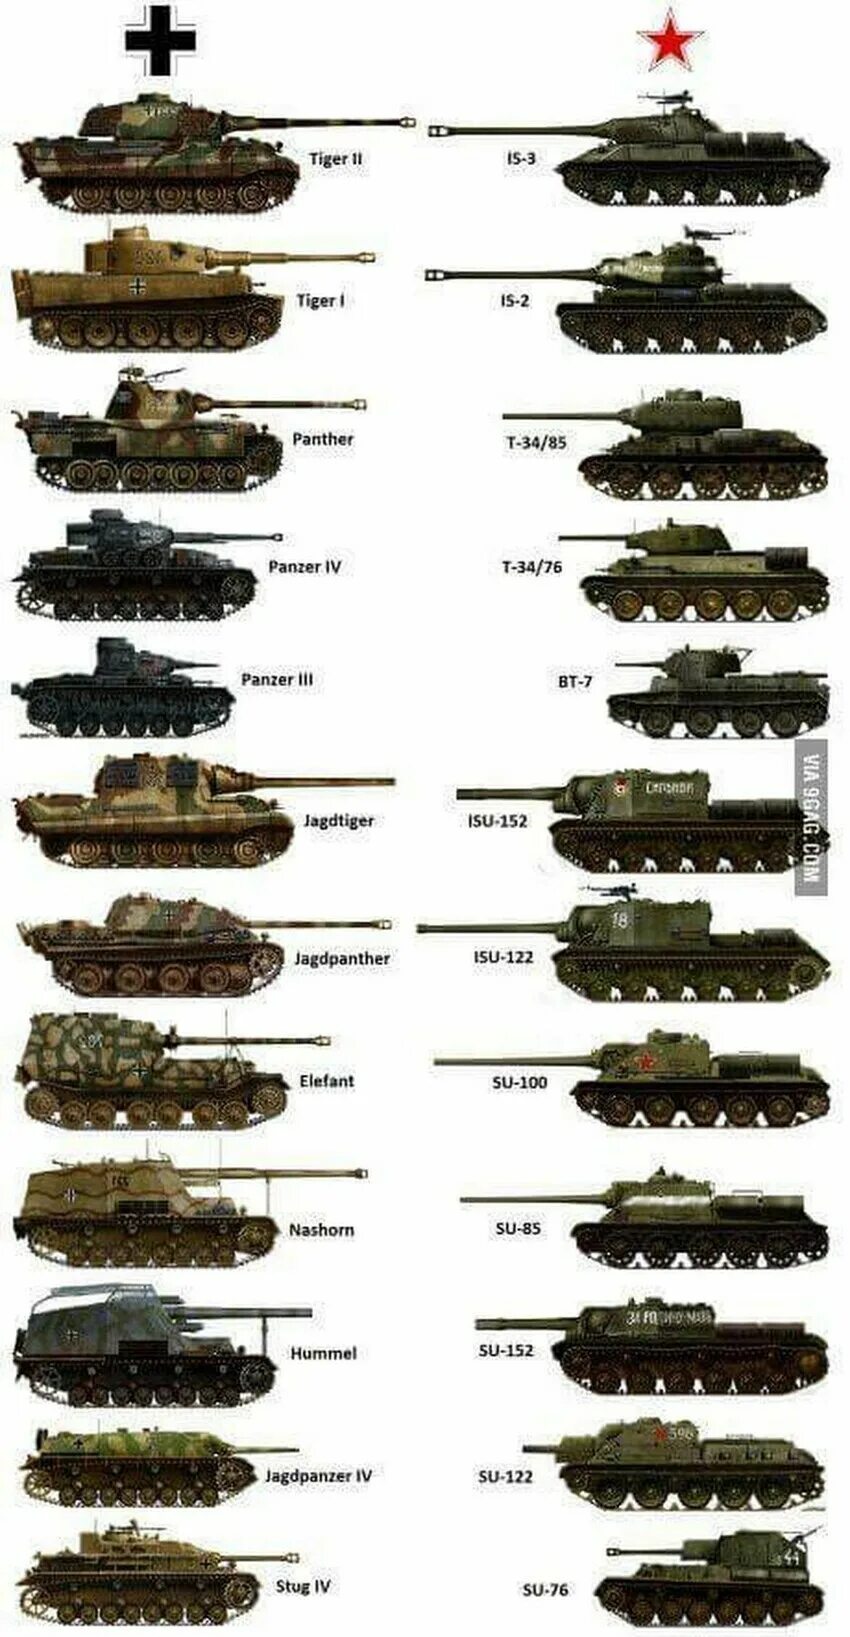 Название танков в годы войны. Танки второй мировой войны немецкие танки. Танки 2 мировой войны СССР И Германии. Линейка немецких танков второй мировой войны. Полное название немецких танков второй мировой войны.